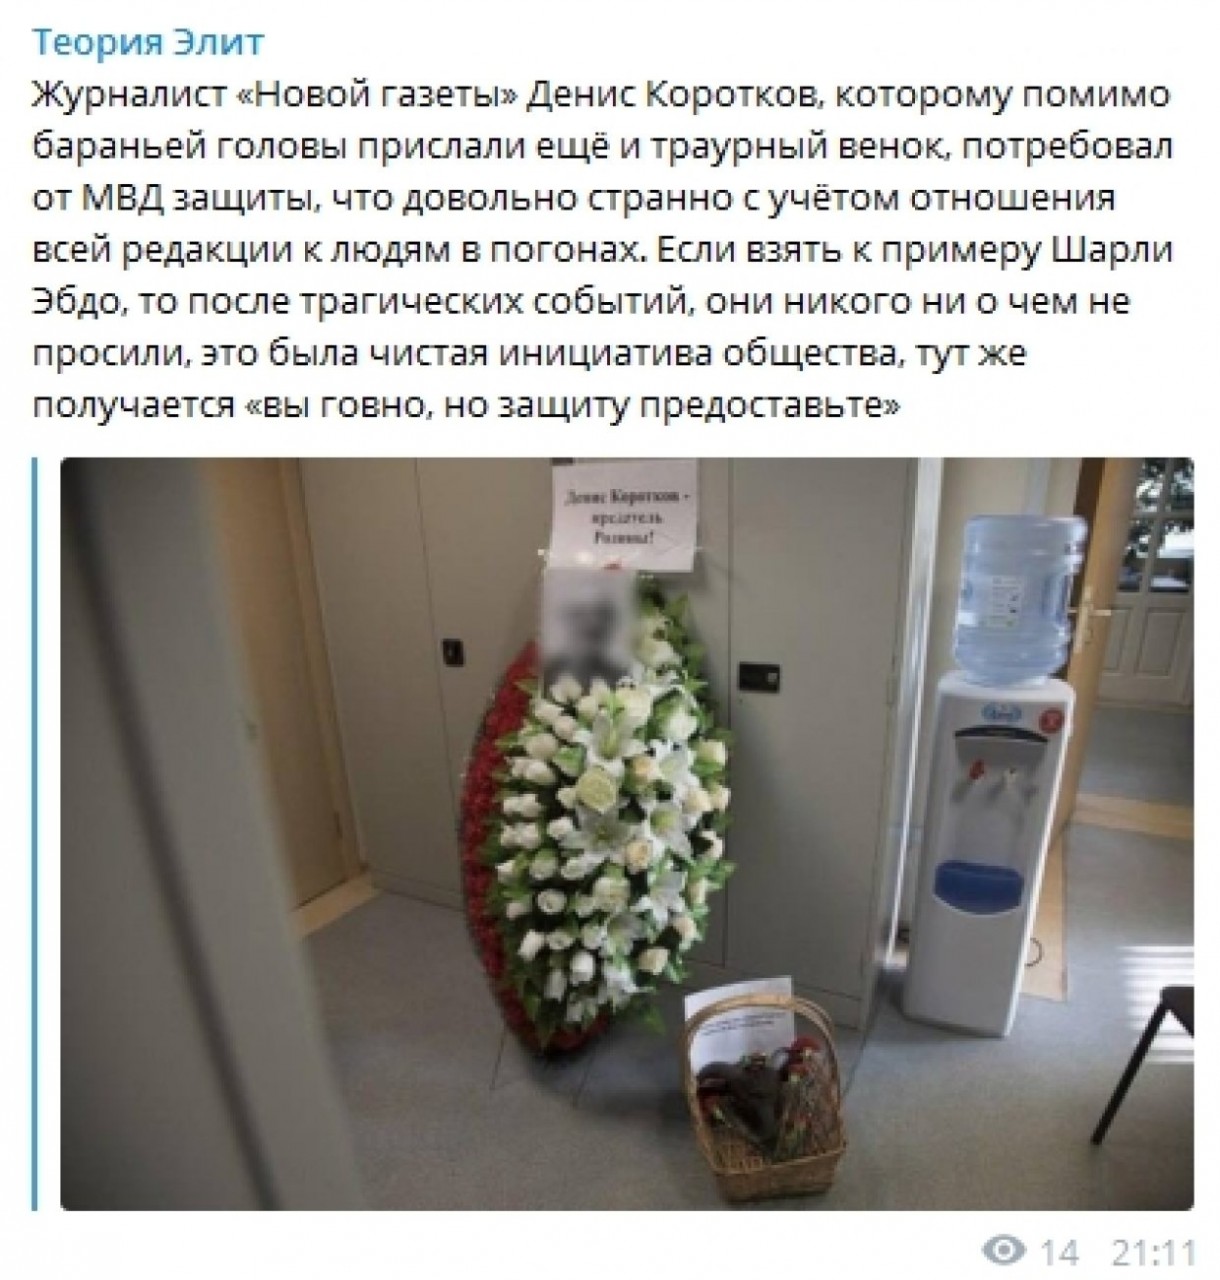 «Зачем помогать предателям?»: россияне прокомментировали просьбу «Новой газеты» защитить ее от угроз